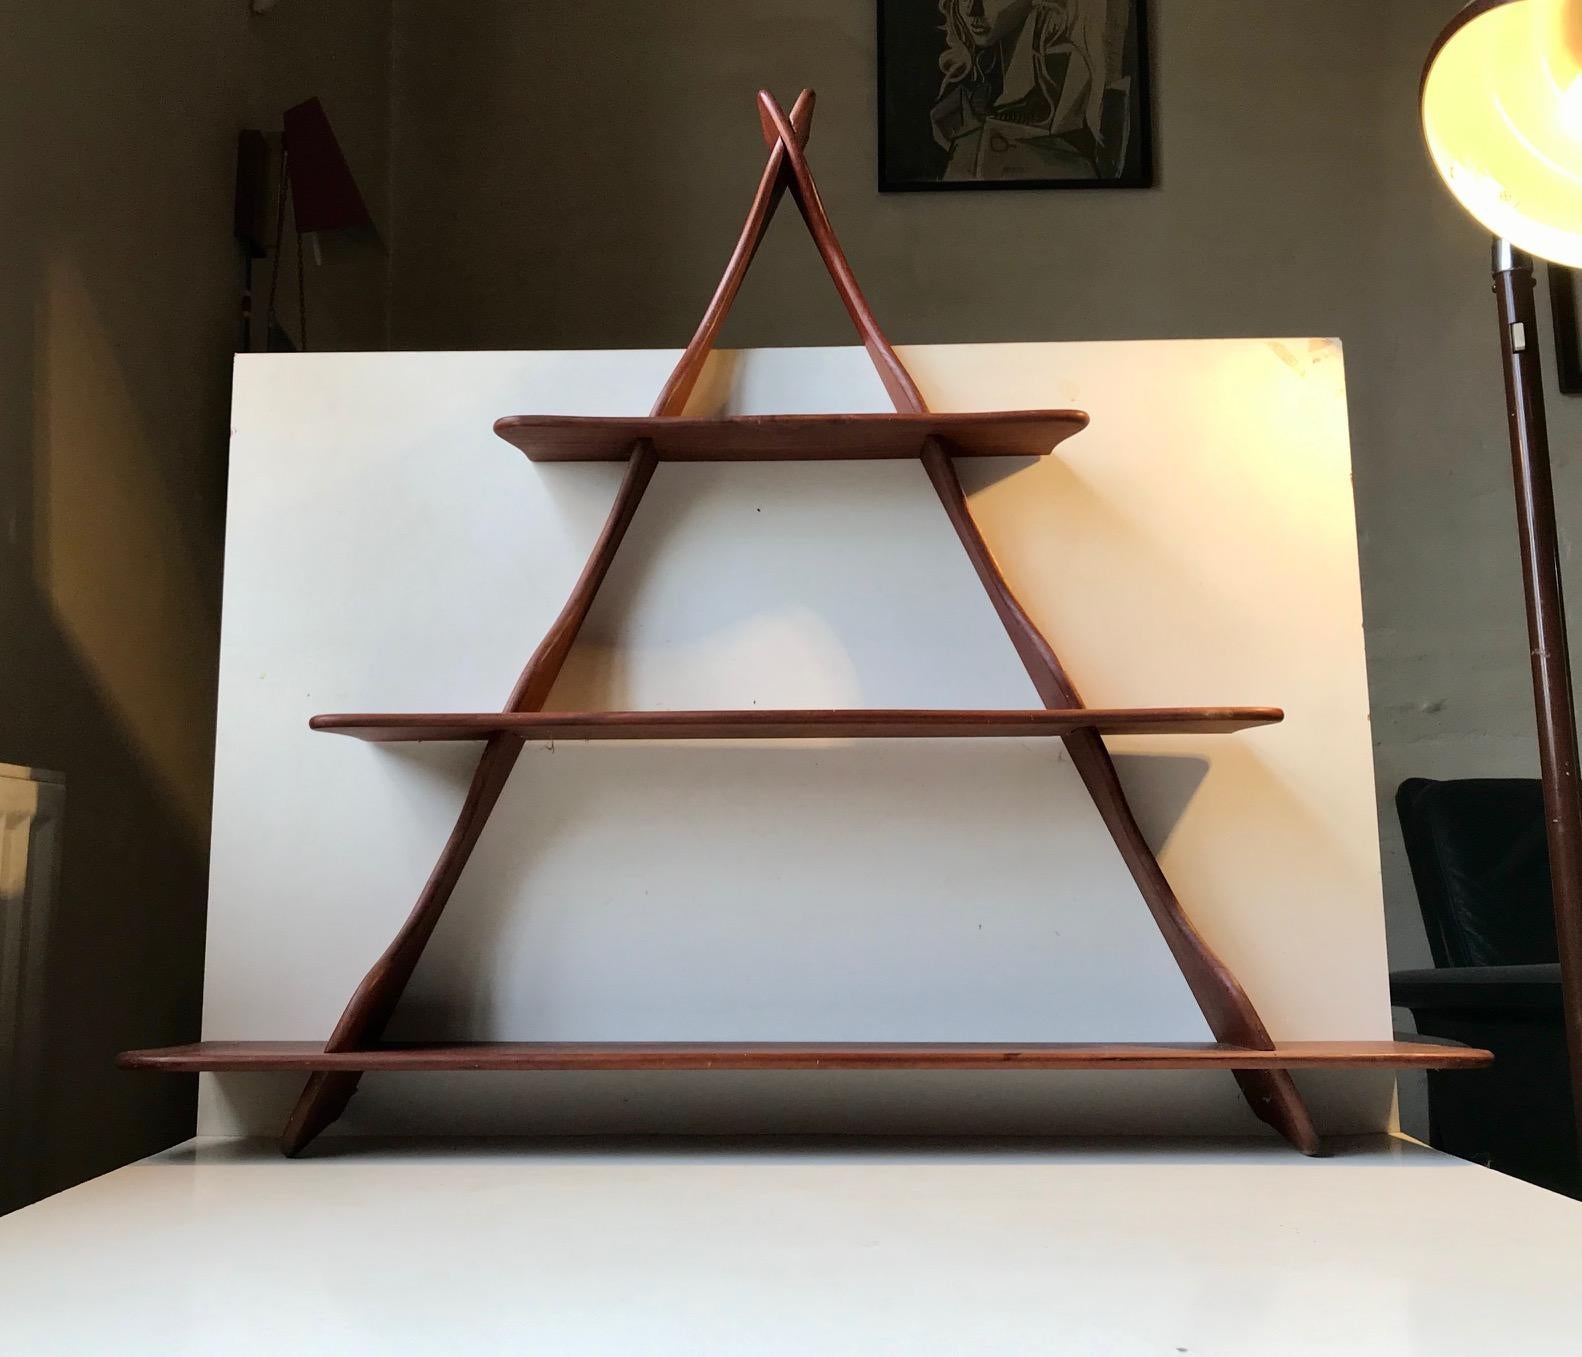 Dreieckiges Regal mit abgerundeten Profilen, entworfen von Peder Moos in Zusammenarbeit mit seinen Studenten an der Architektenschule in Kopenhagen. Geeignet als Gewürzregal oder zum Ausstellen von kleinen Sammlerstücken. Es wird ohne